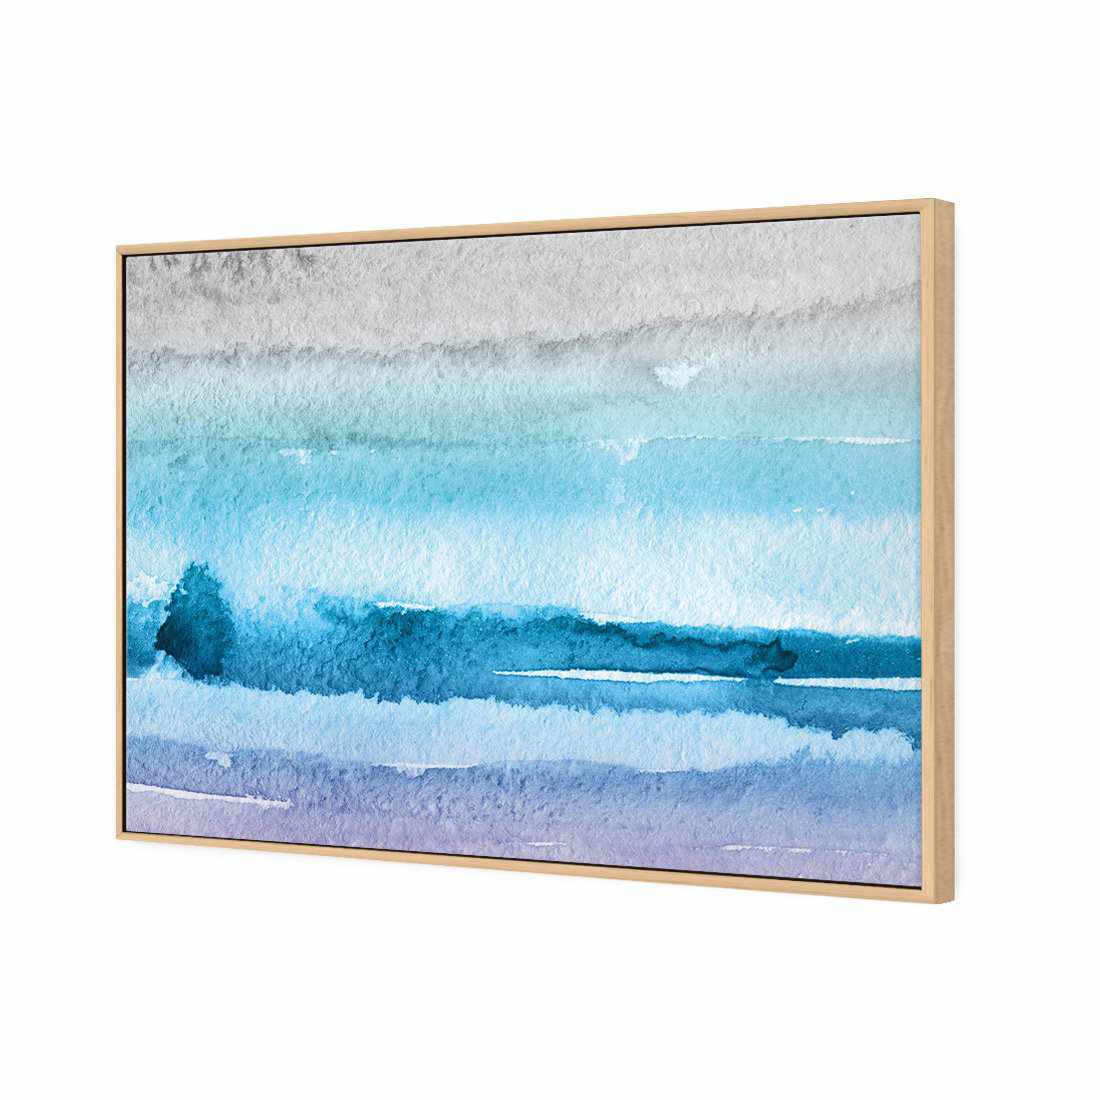 Aquarelle Canvas Art-Canvas-Wall Art Designs-45x30cm-Rolled Canvas-Wall Art Designs